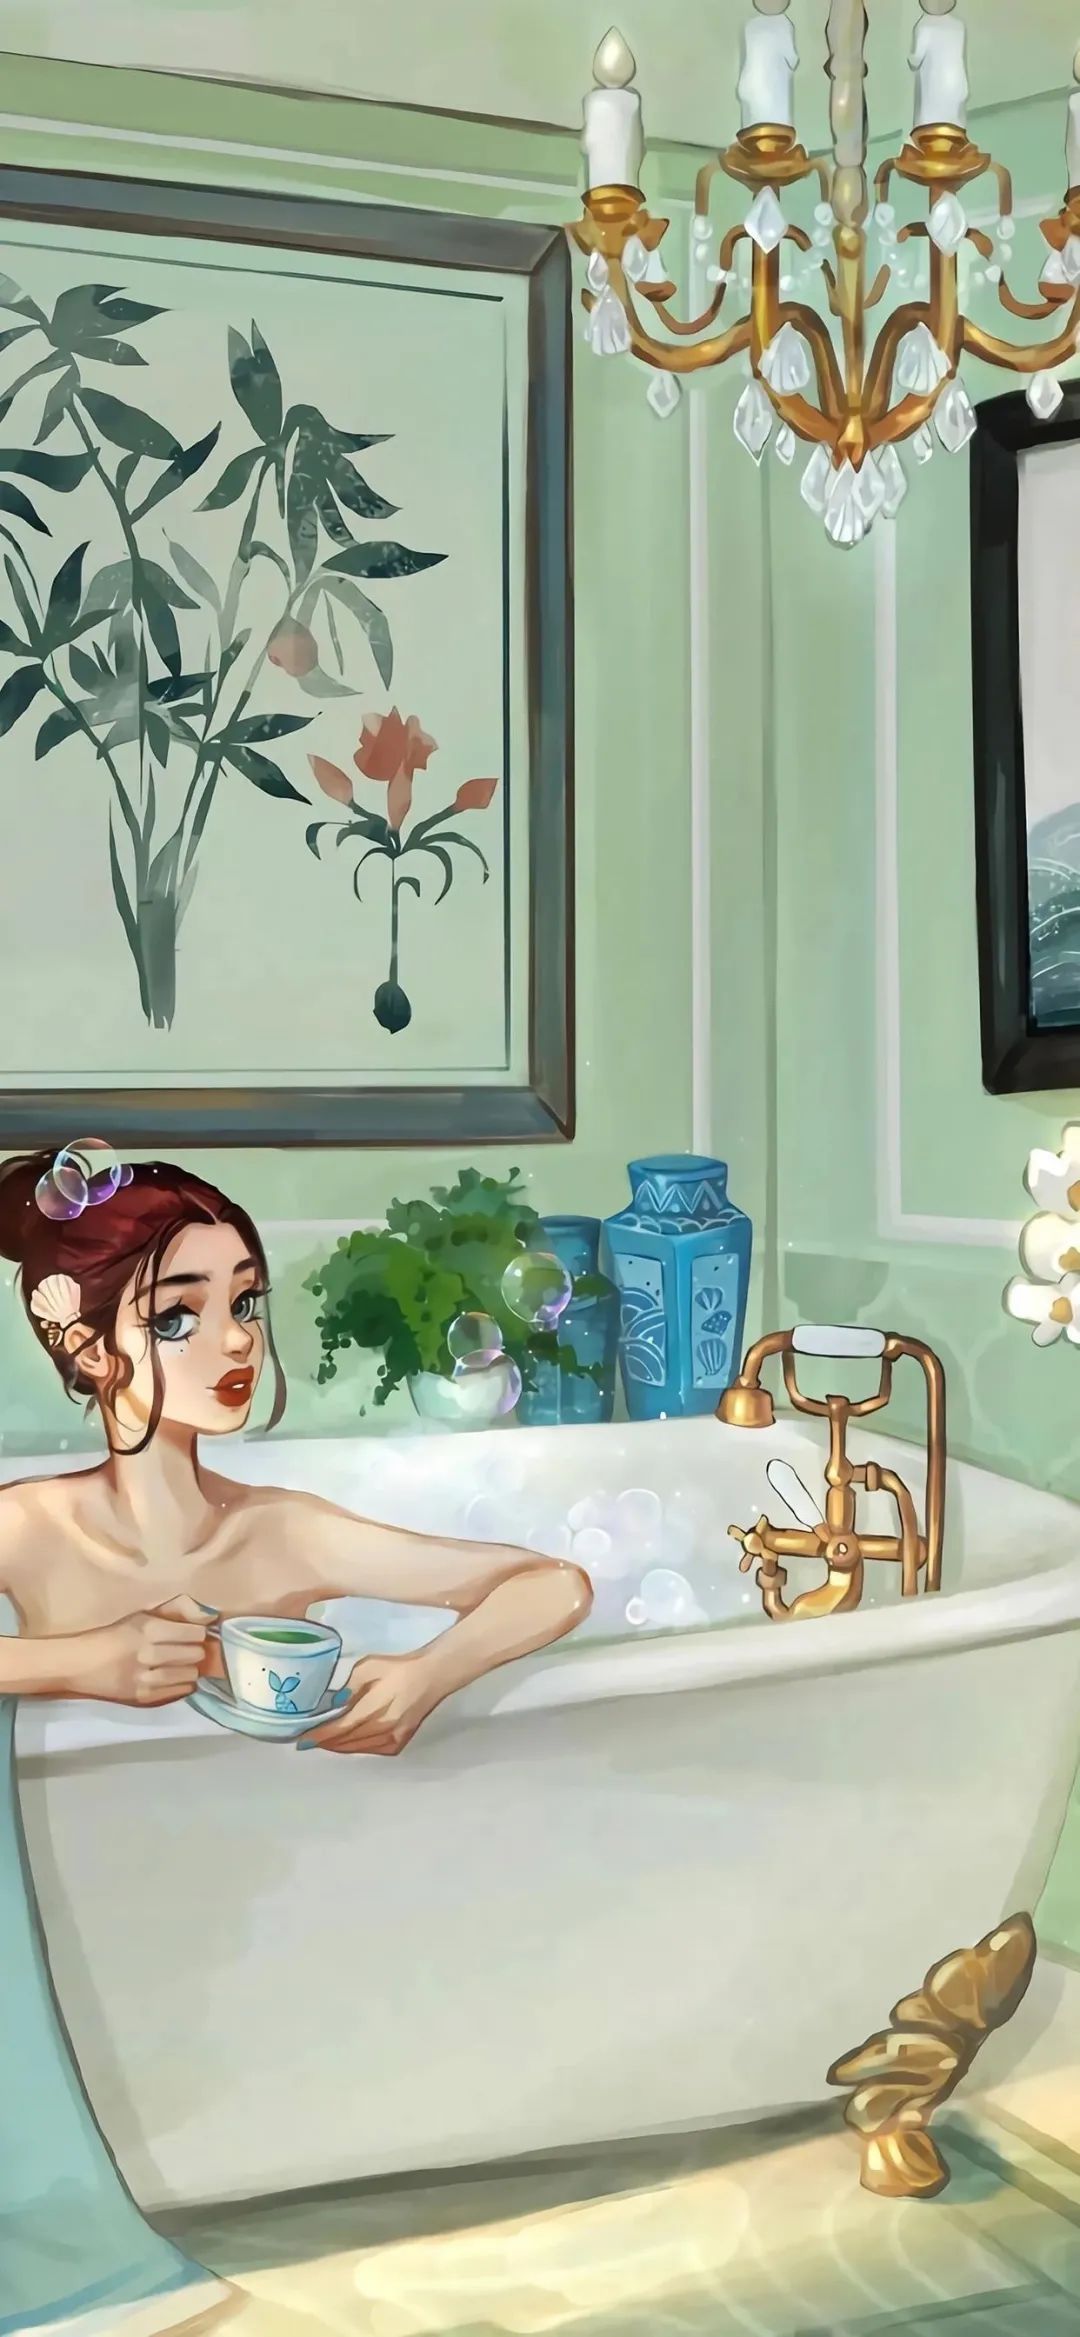 美女浴缸喝咖啡插画手机壁纸